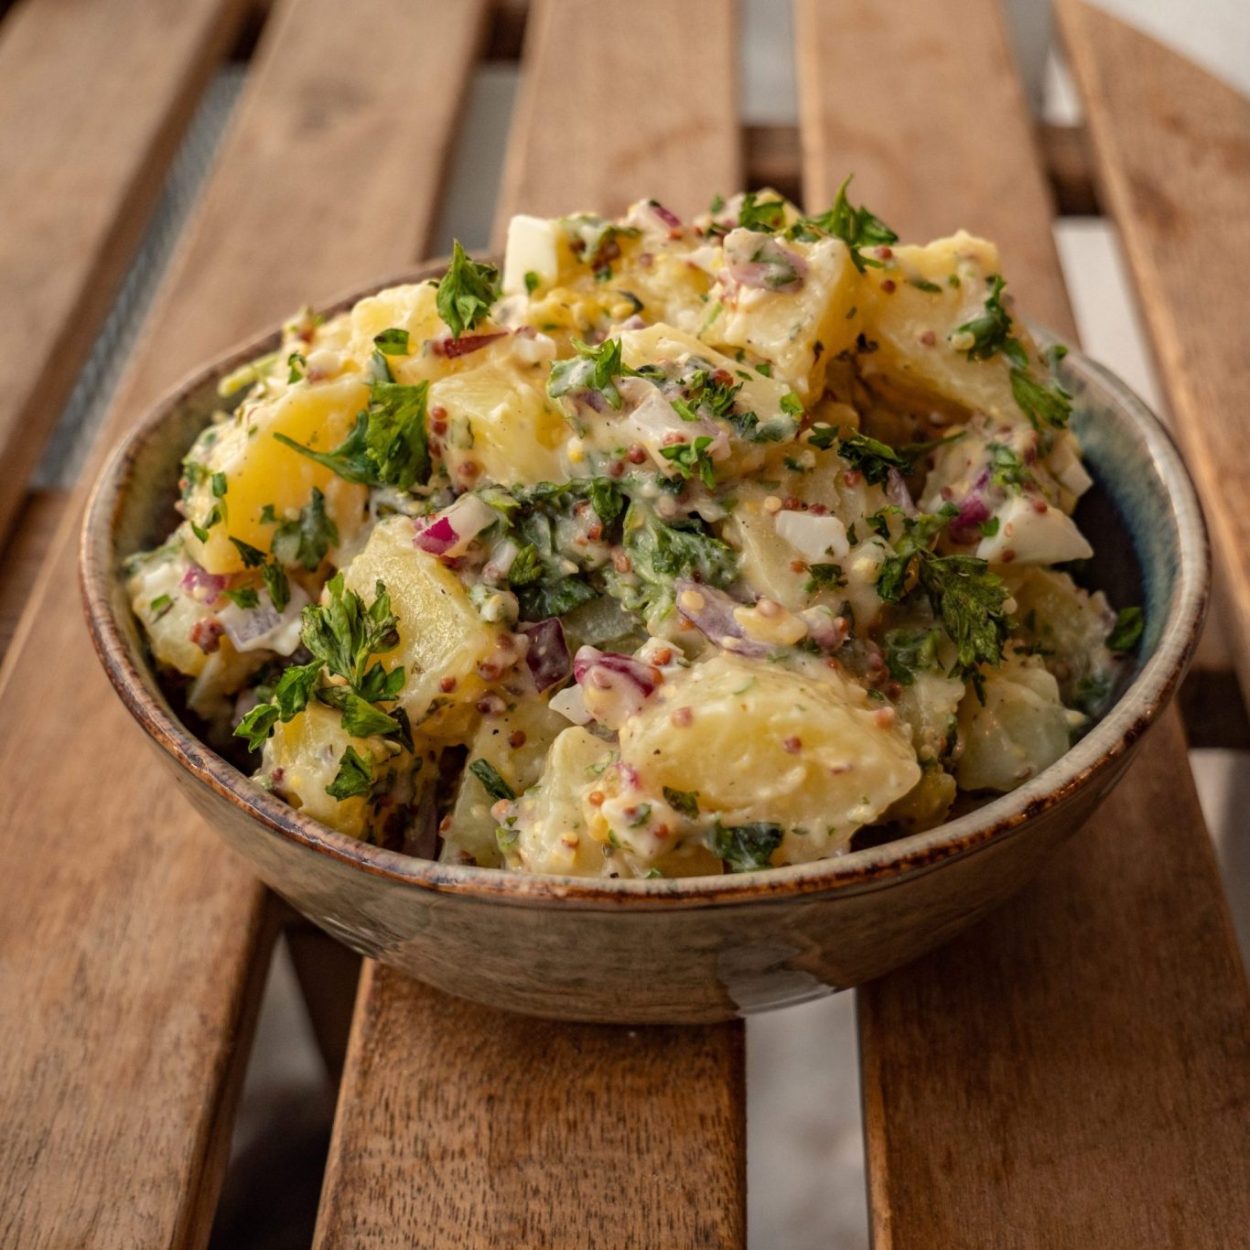 Potato salad – salade de pommes de terre